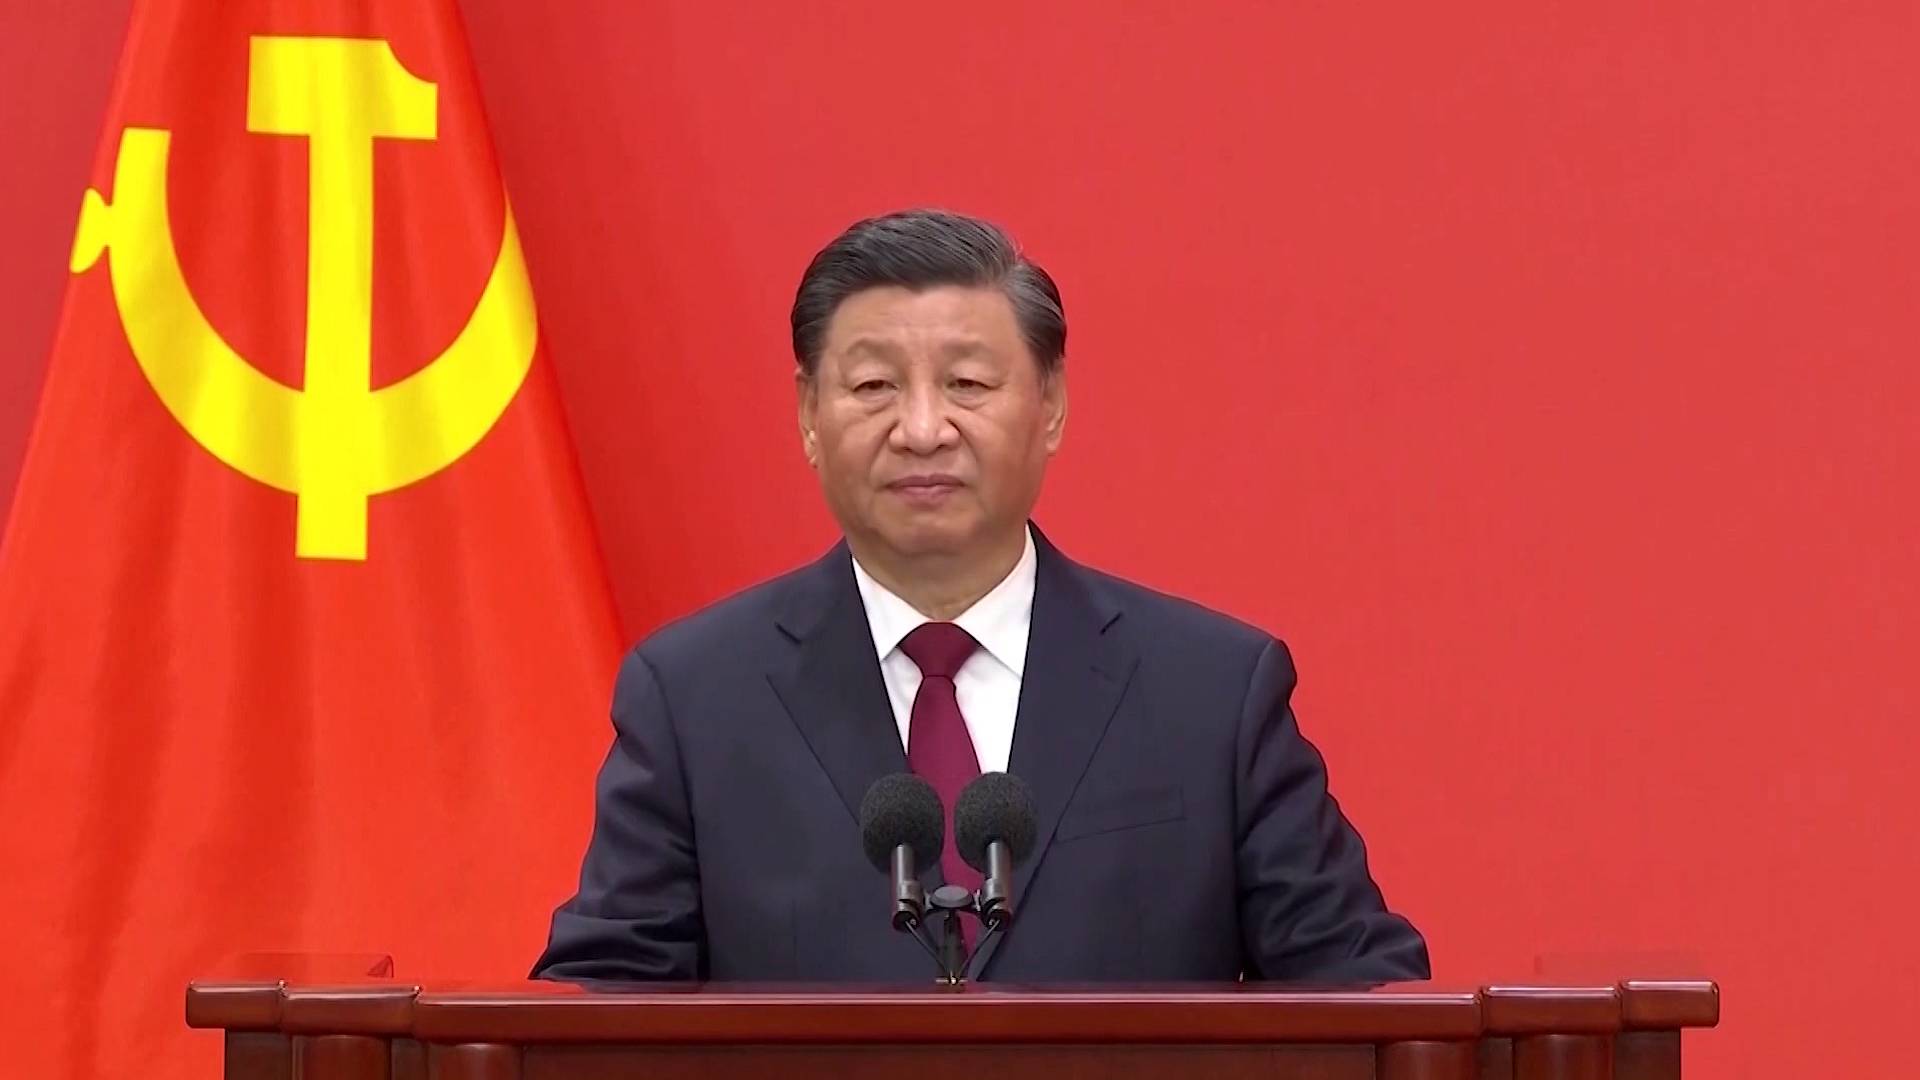 Xi Jinping vince la rielezione per il terzo mandato mentre le proteste anti-governative si diffondono silenziosamente in Cina